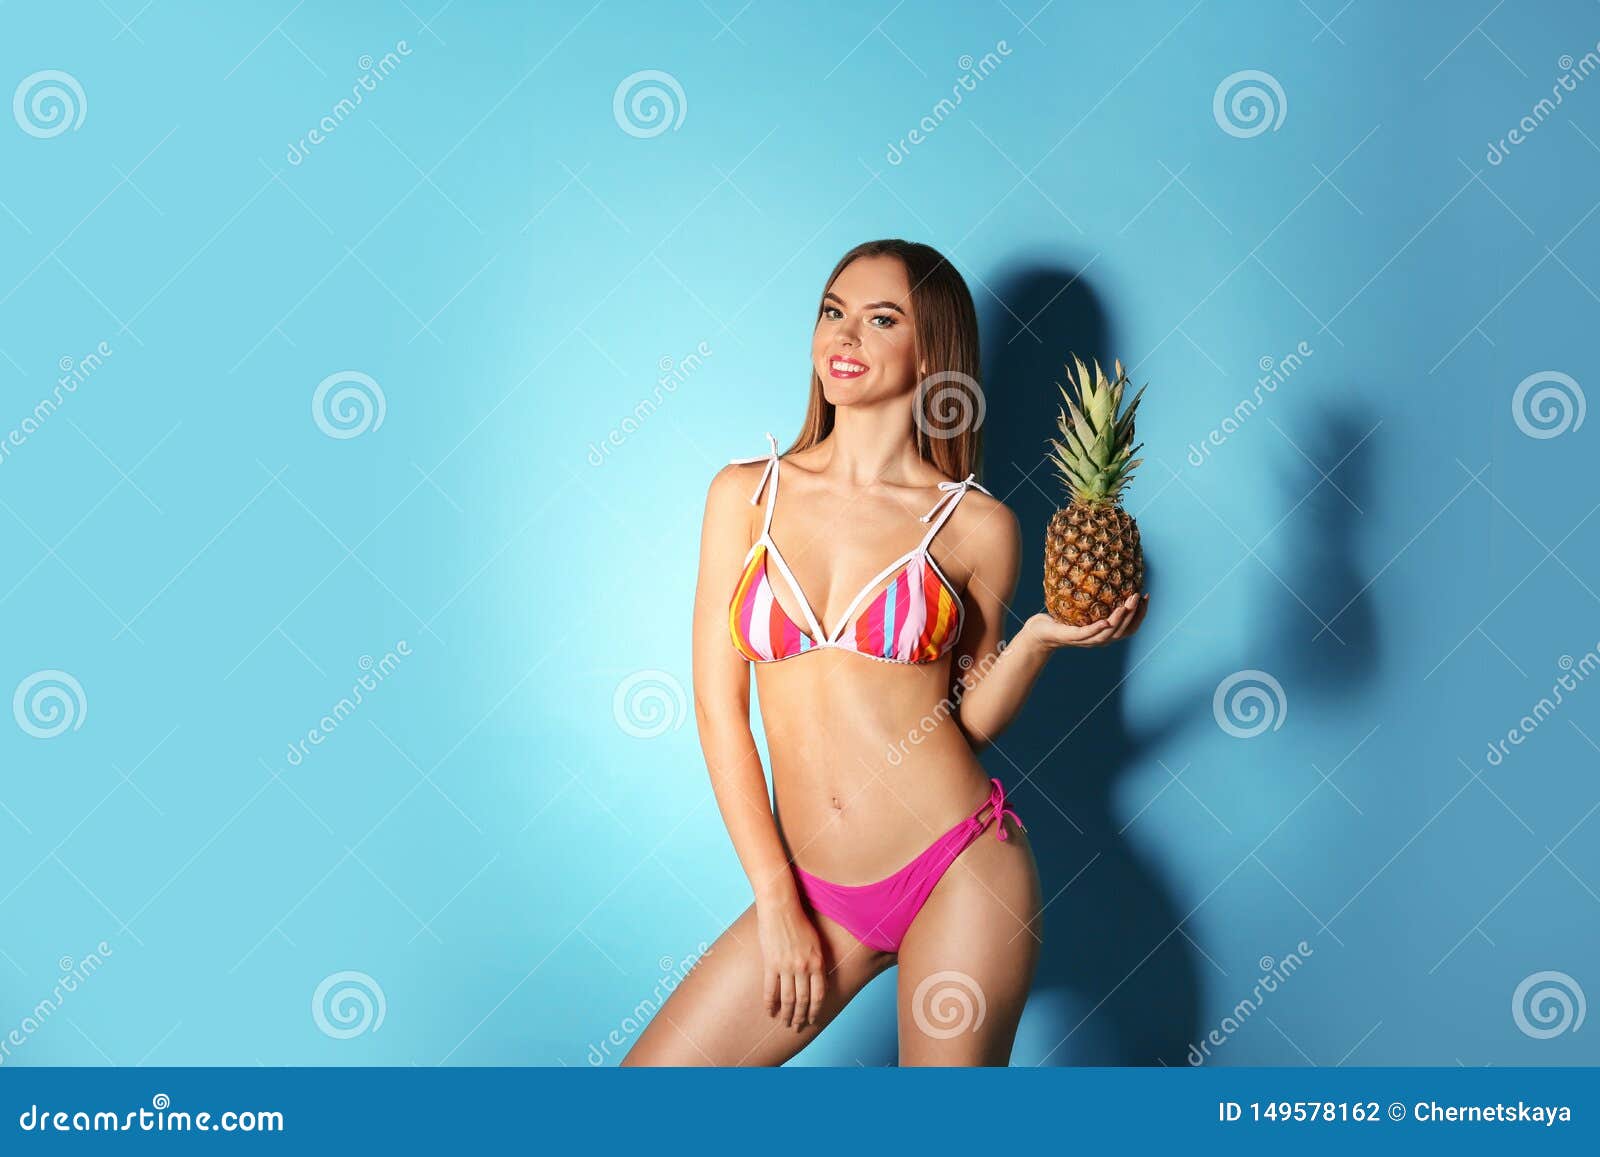 monteren Bibliografie Verdeel Vrij Sexy Vrouw in Modieuze Bikini Met Ananas Stock Foto - Image of blauw,  portret: 149578162